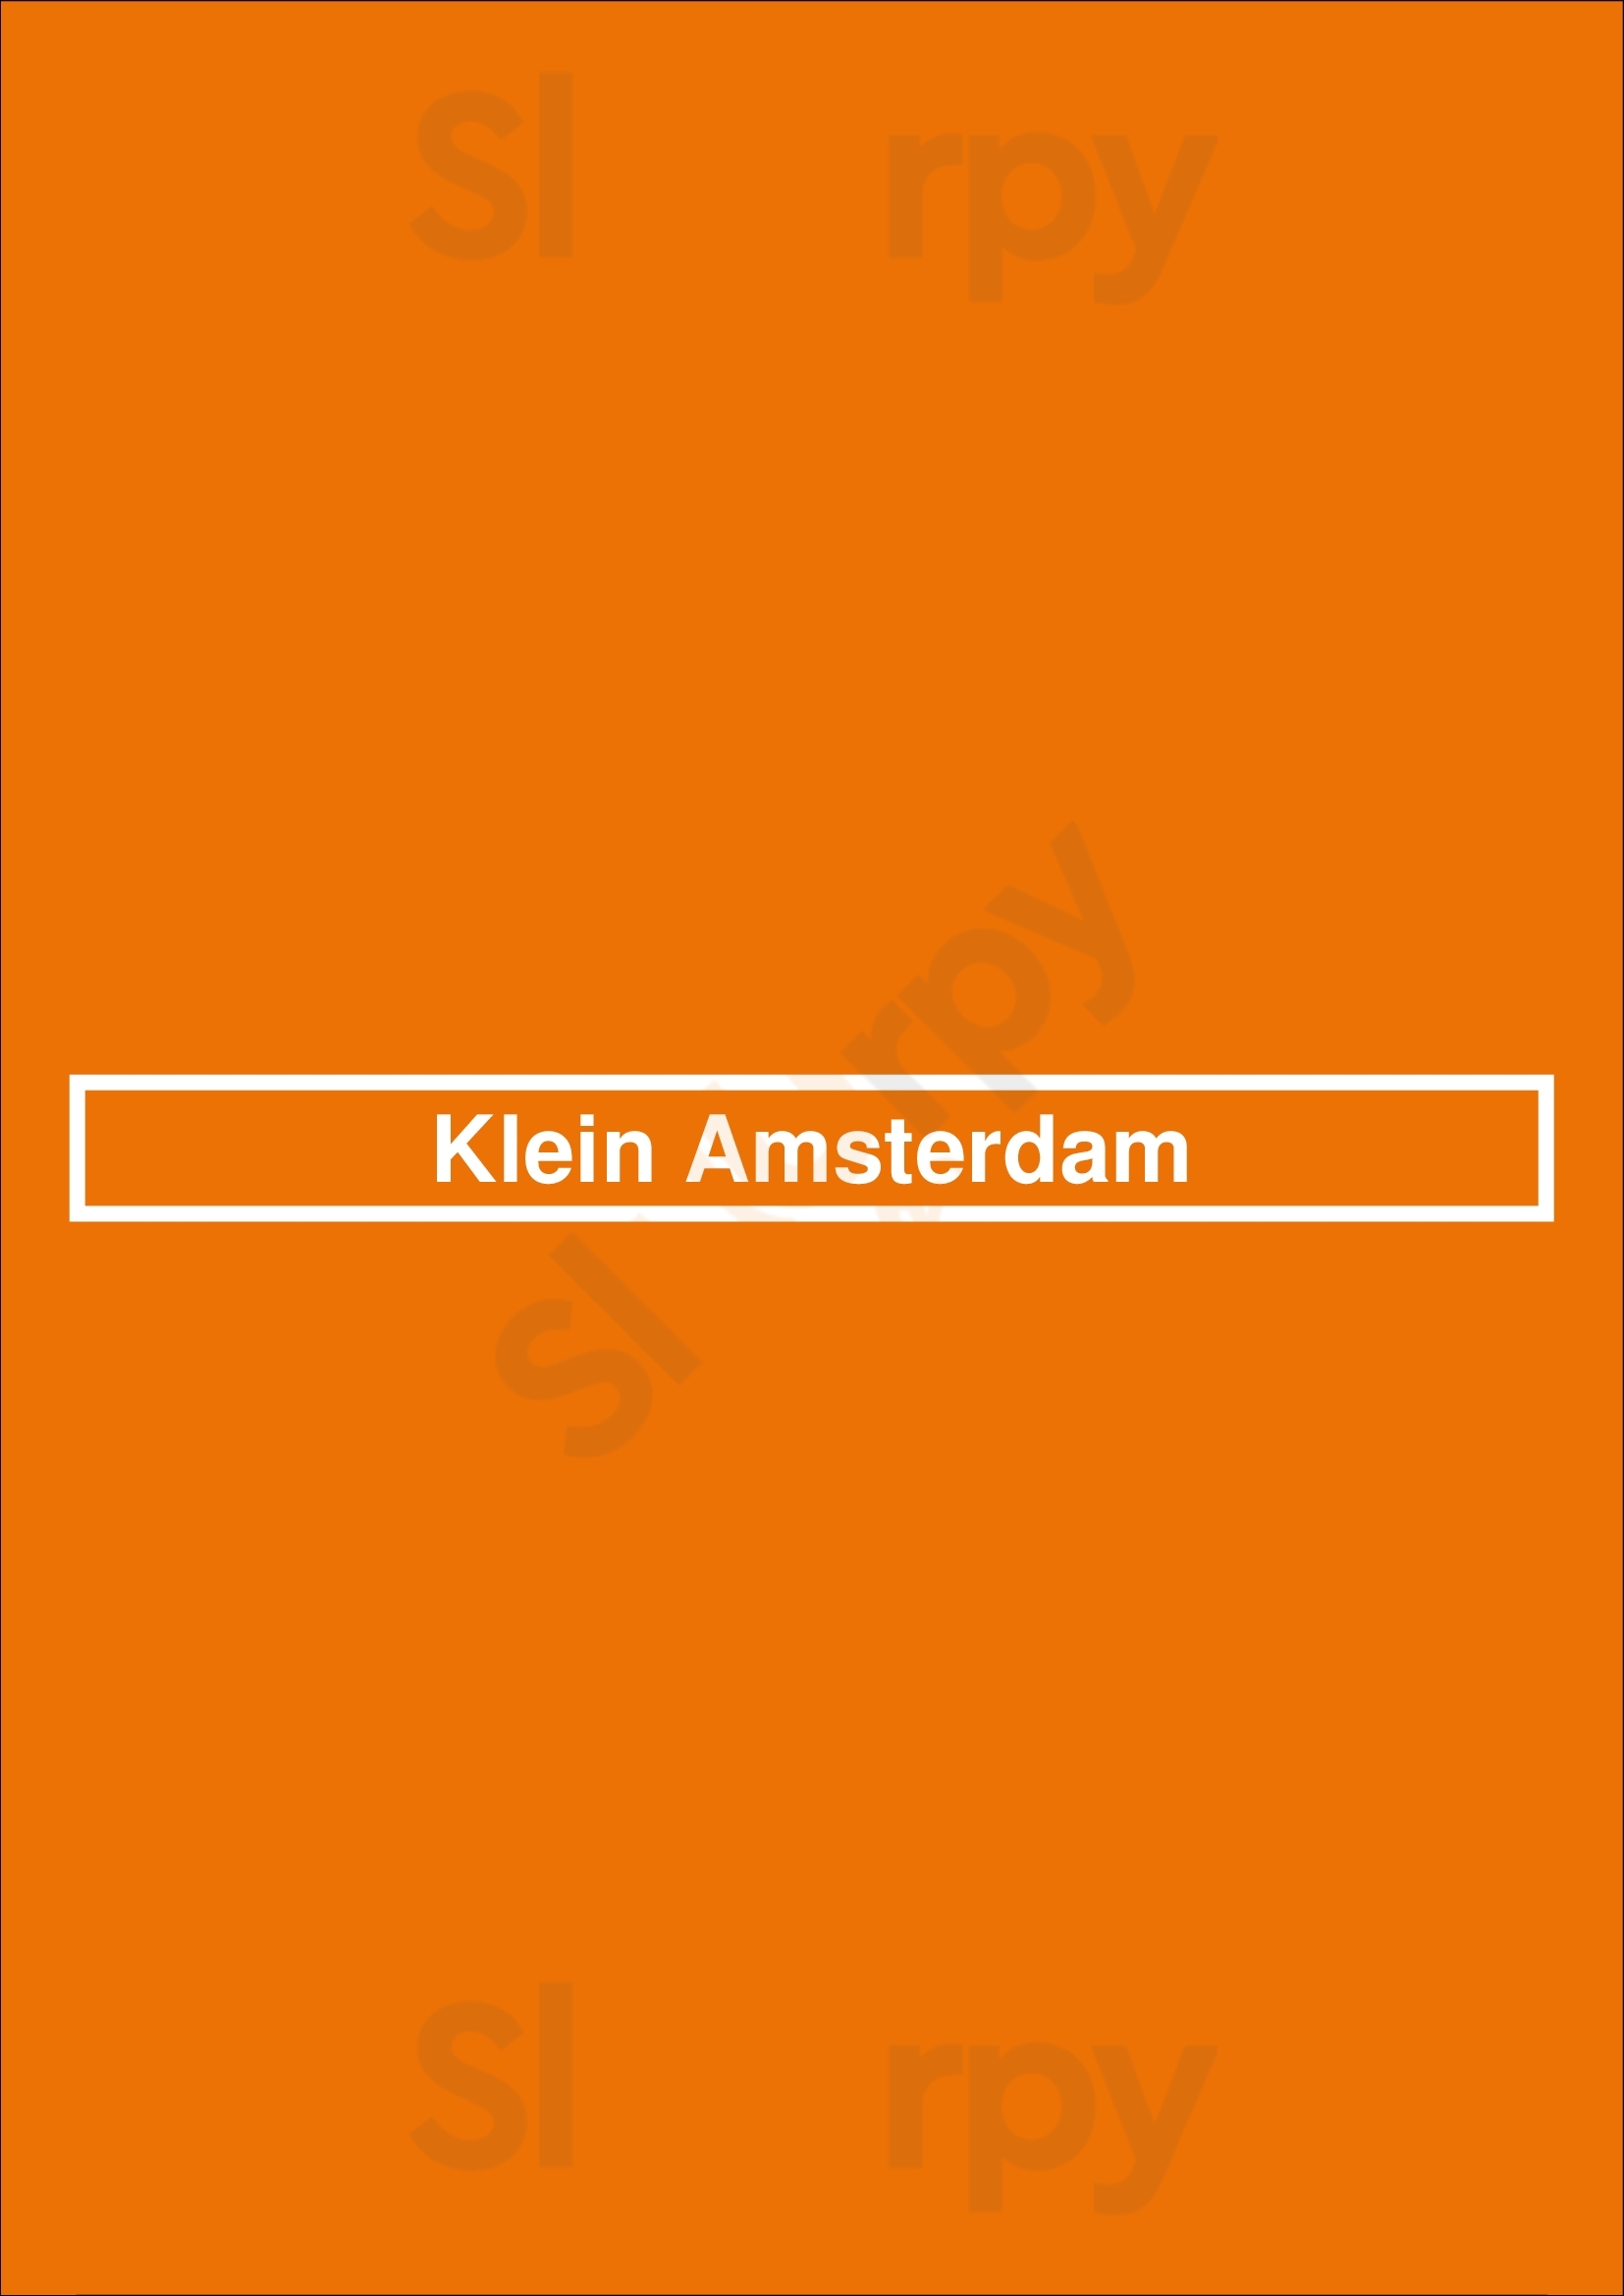 Klein Amsterdam Knokke Menu - 1